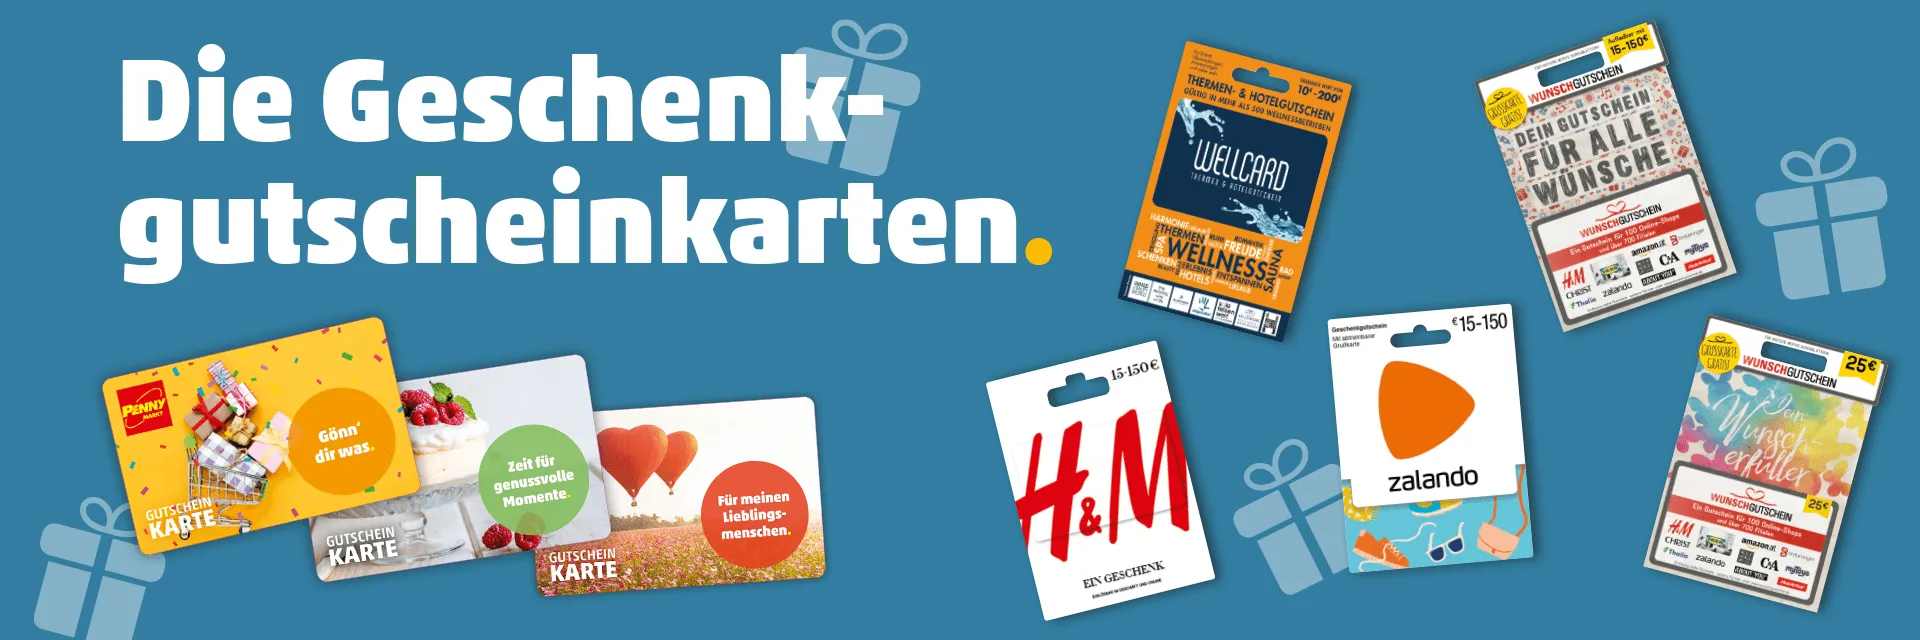 Gutscheine & Wertkarten zum Verschenken | PENNY Markt Österreich